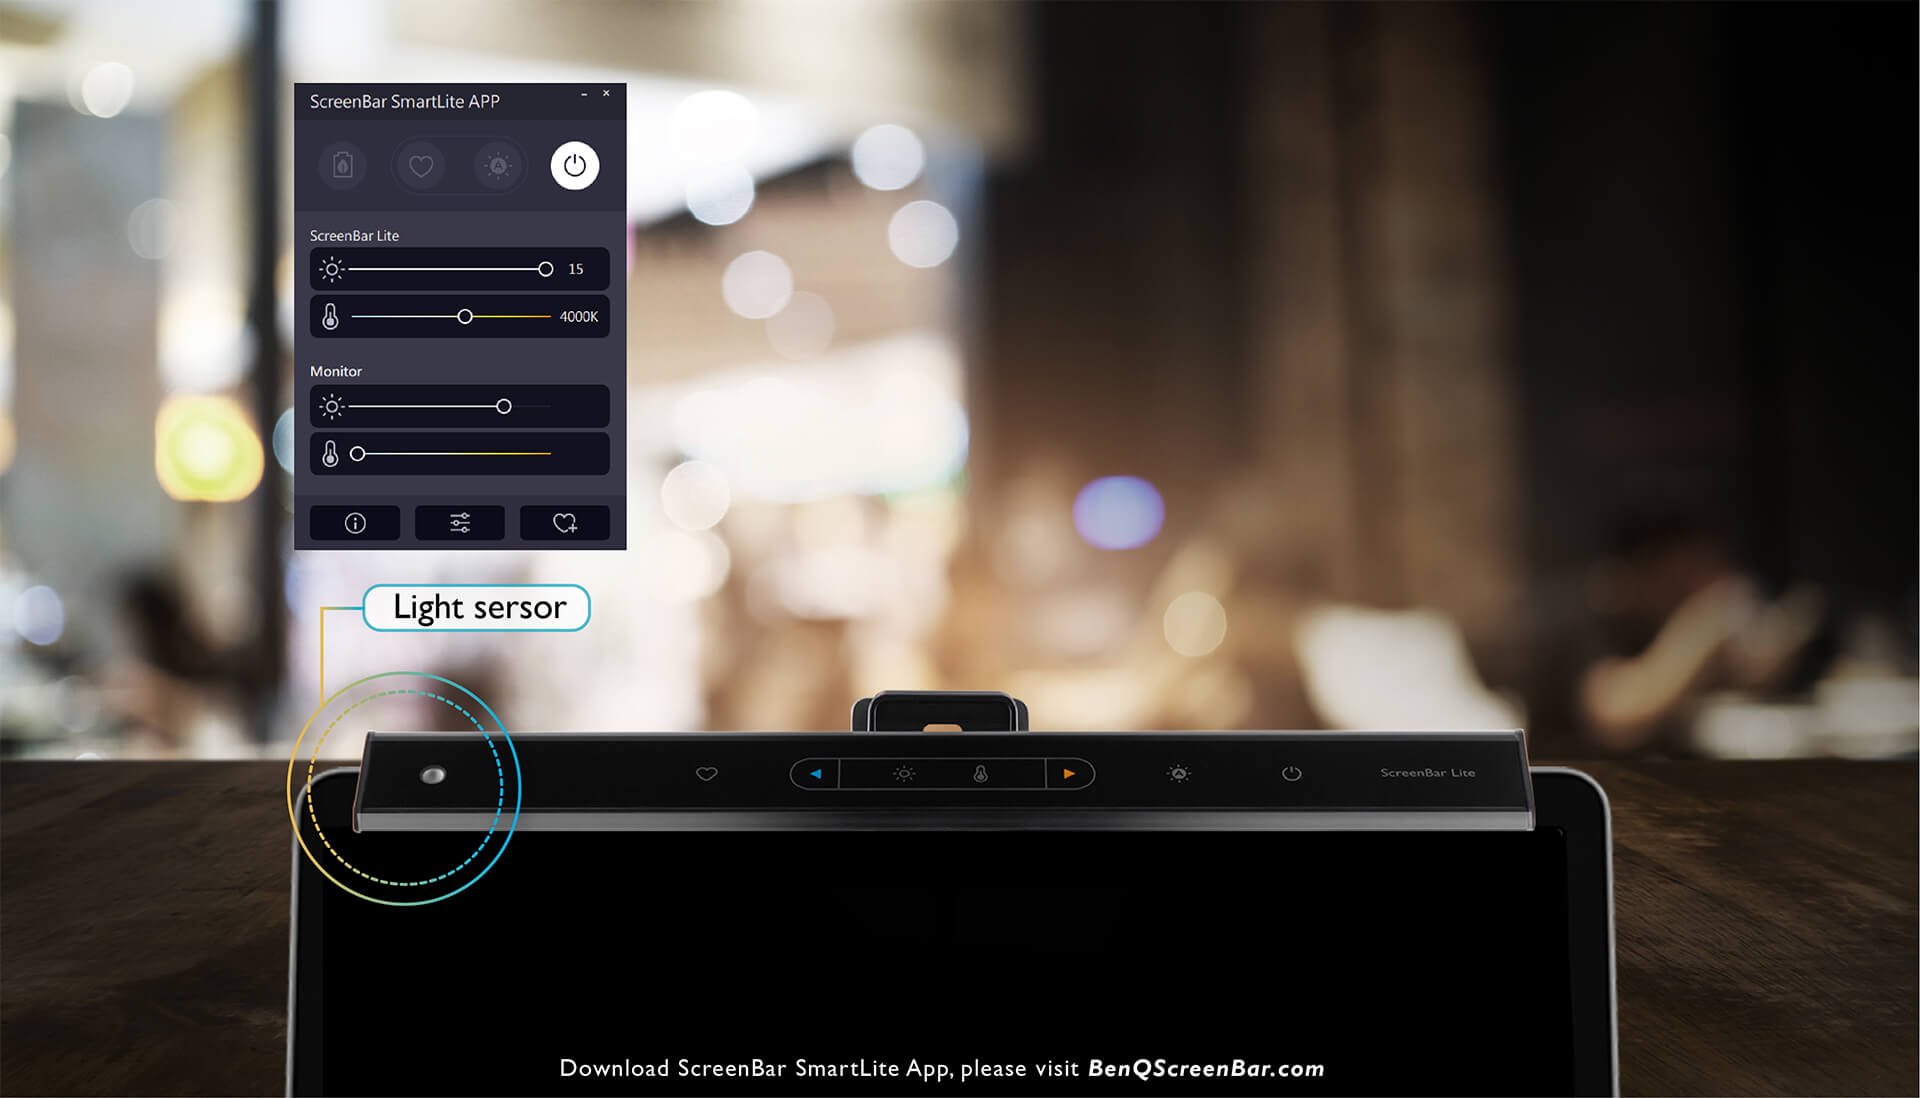 Die ScreenBar Lite sorgt für perfekte Balance zwischen Umgebungslicht, Bildschirmhelligkeit und ScreenBar-Settings